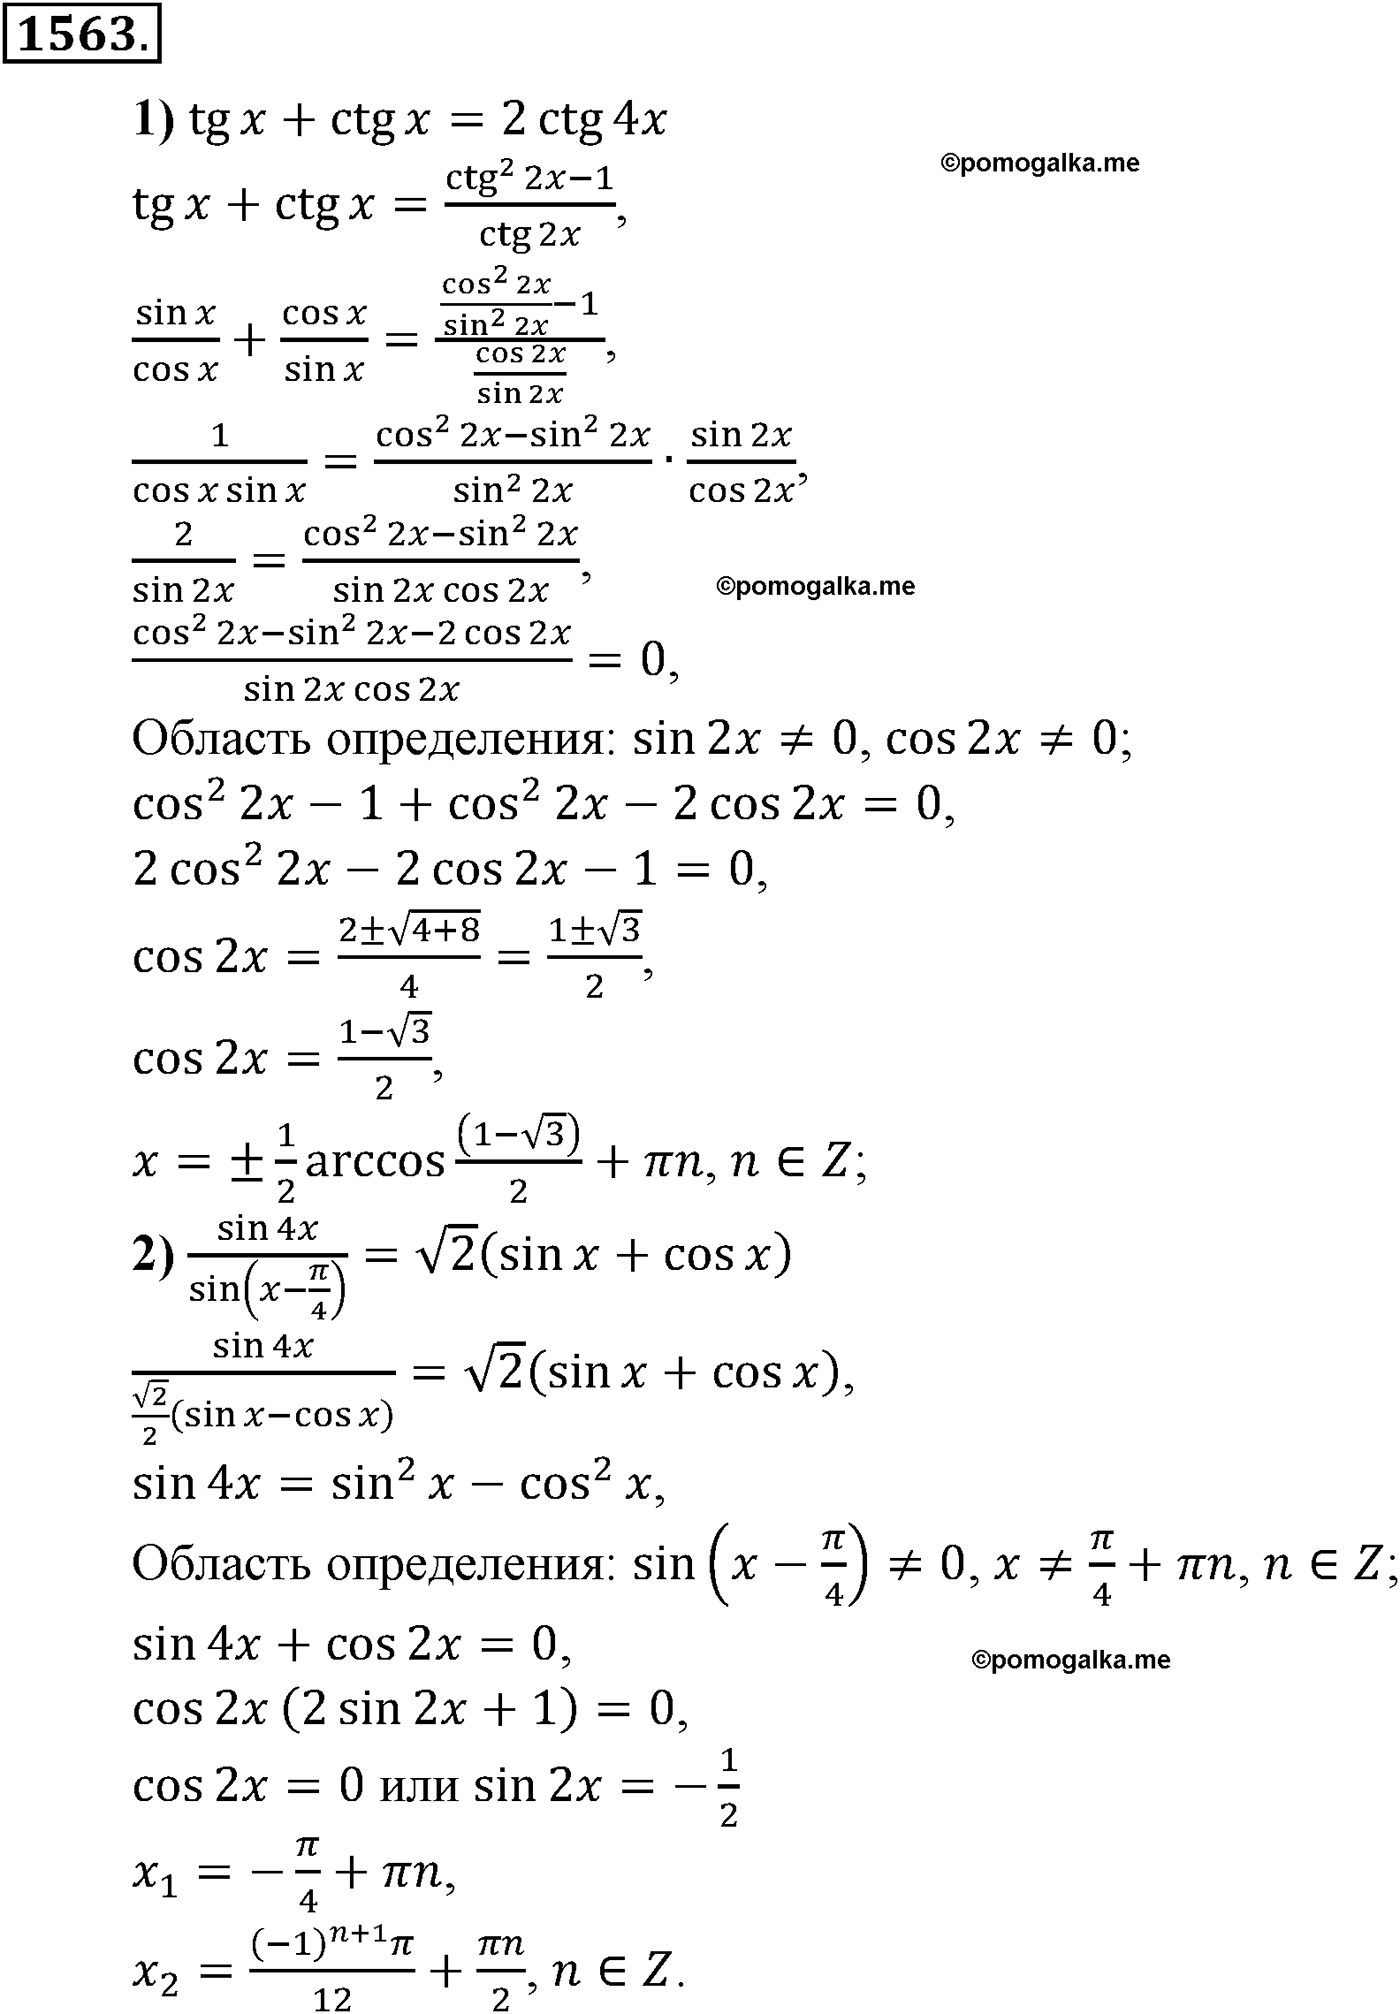 разбор задачи №1563 по алгебре за 10-11 класс из учебника Алимова, Колягина